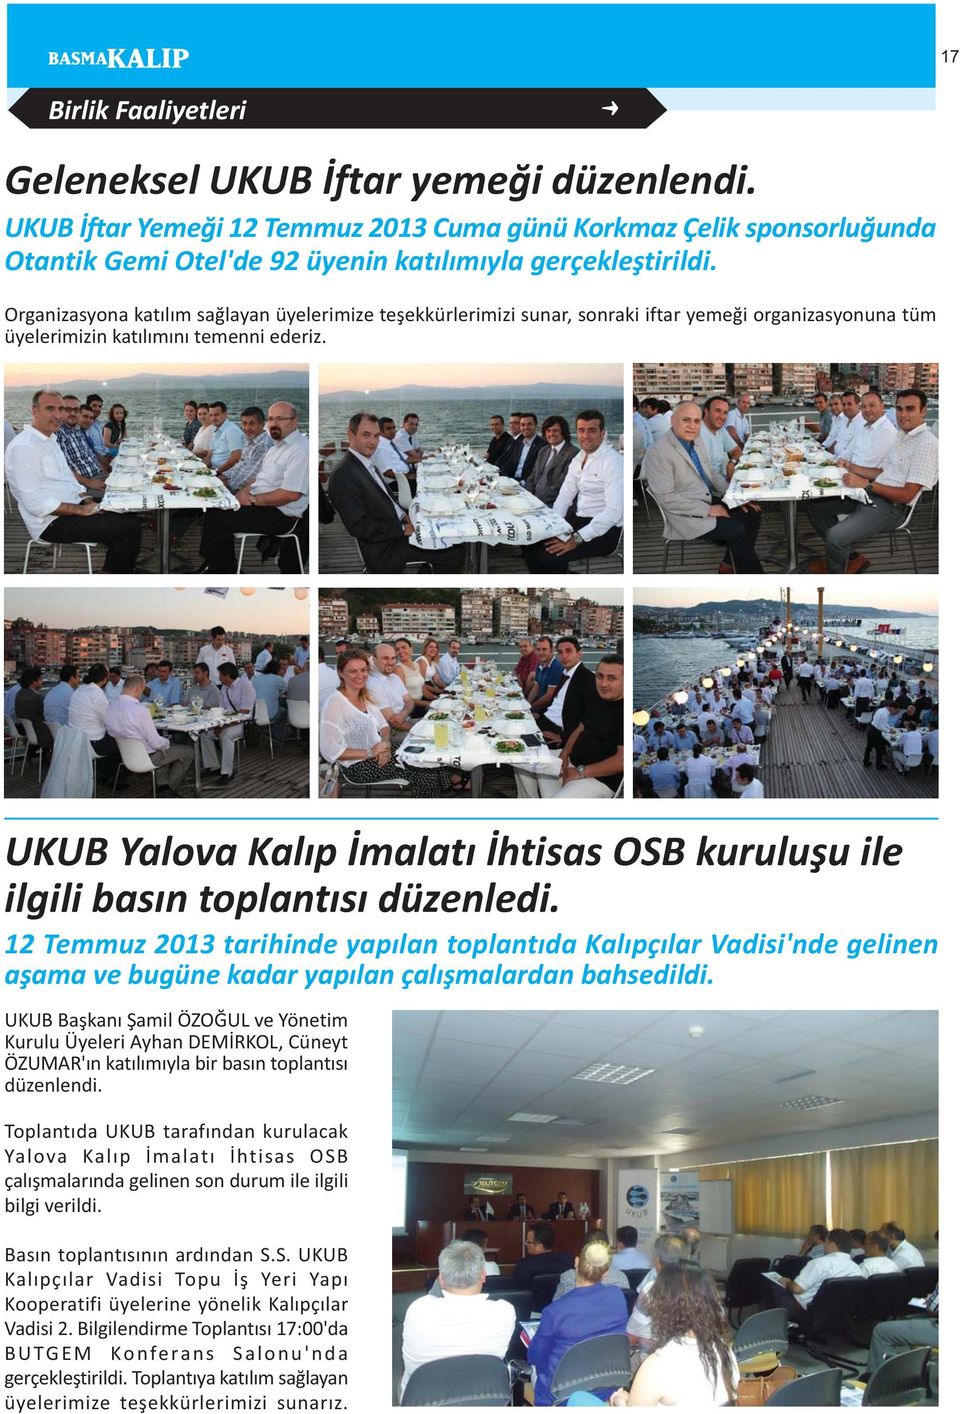 UKUB Yalova Kalýp Ýmalatý Ýhtisas OSB kuruluþu ile ilgili basýn toplantýsý düzenledi.